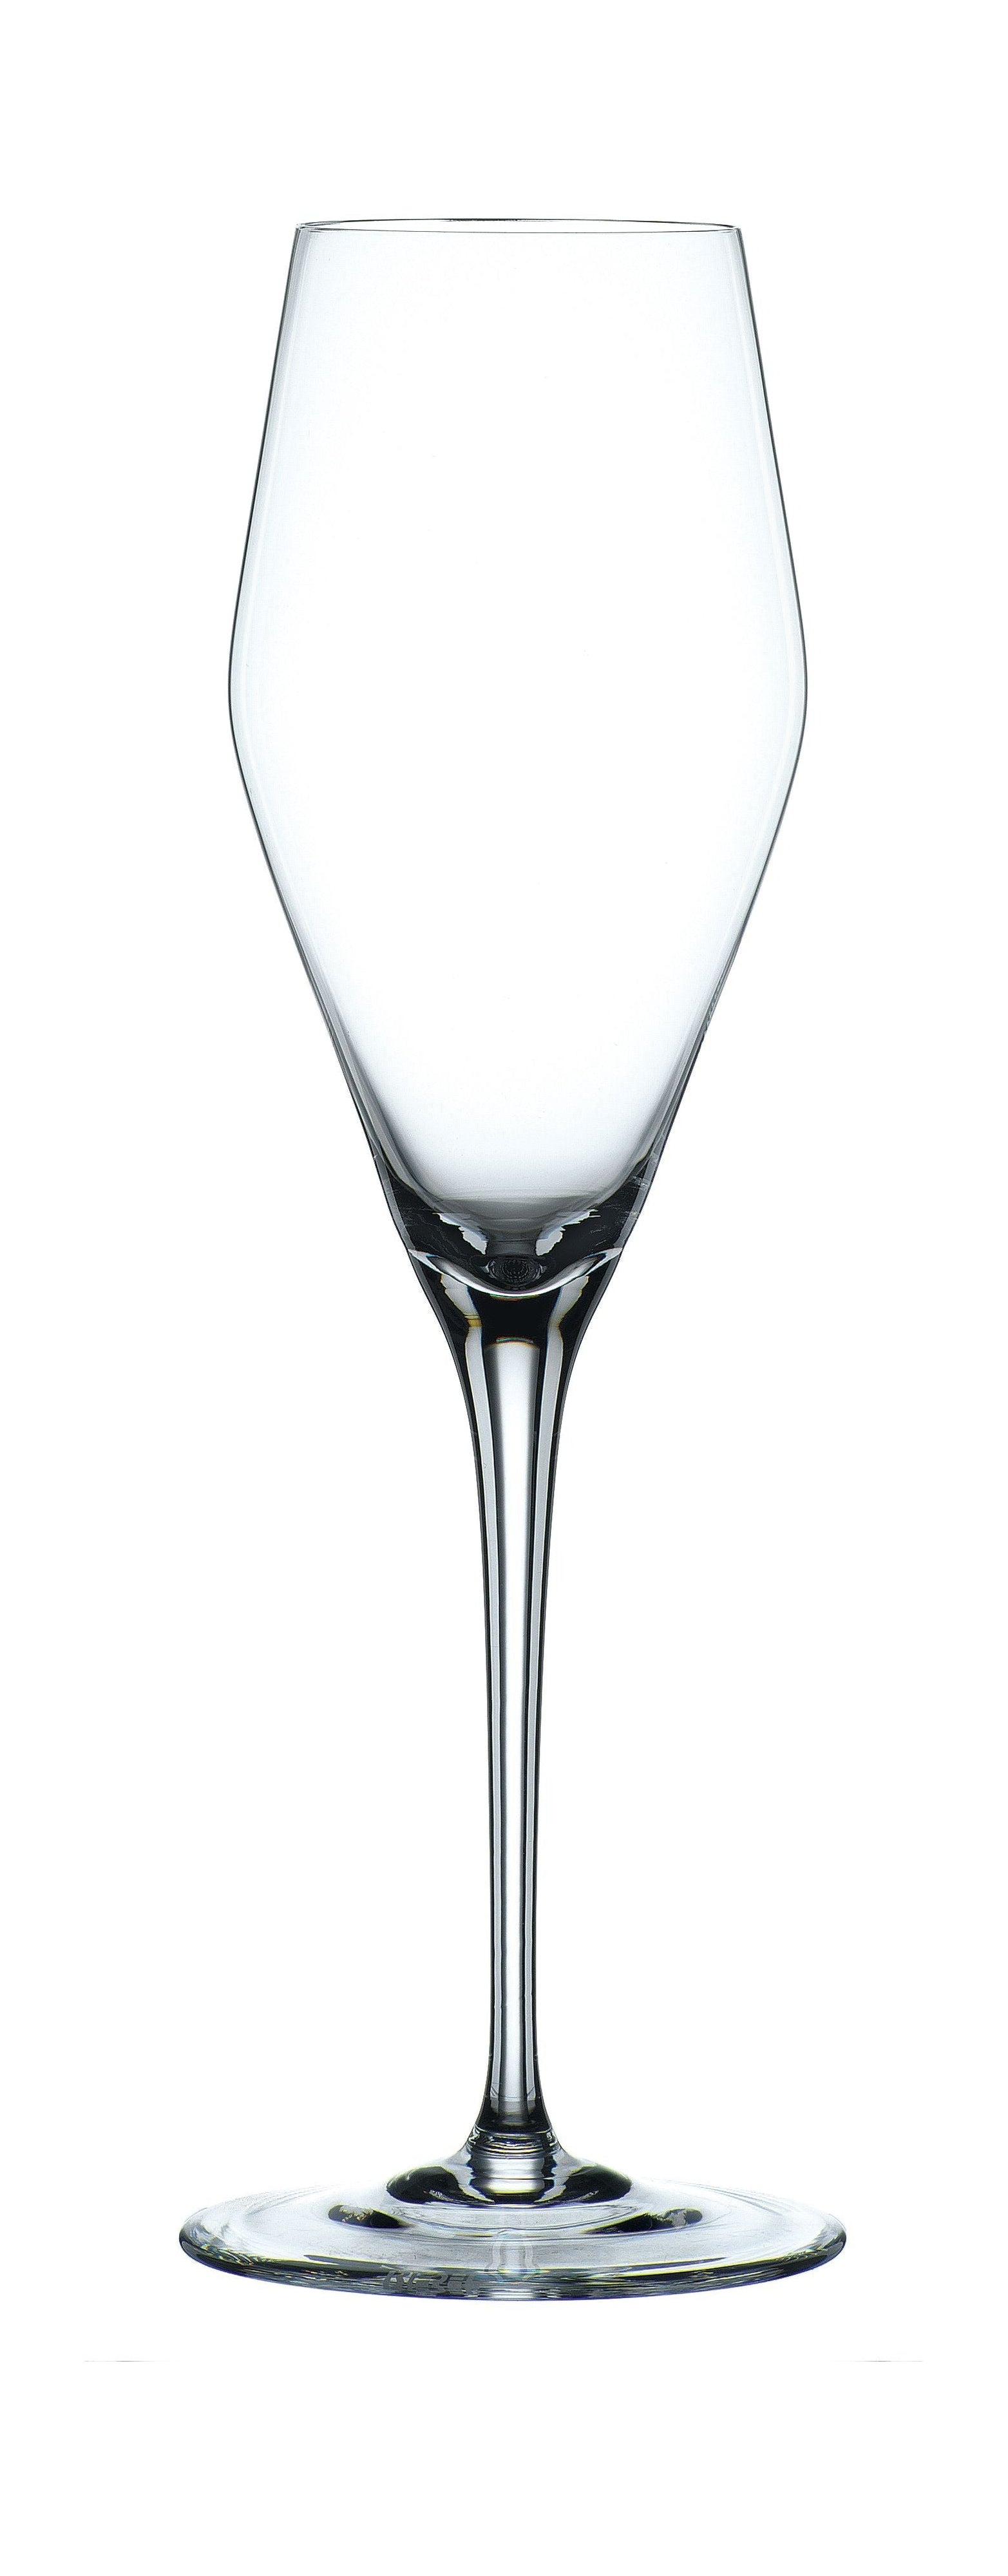 Nachtmann Vi Nova Champagner Glas 280 ml, Satz von 4